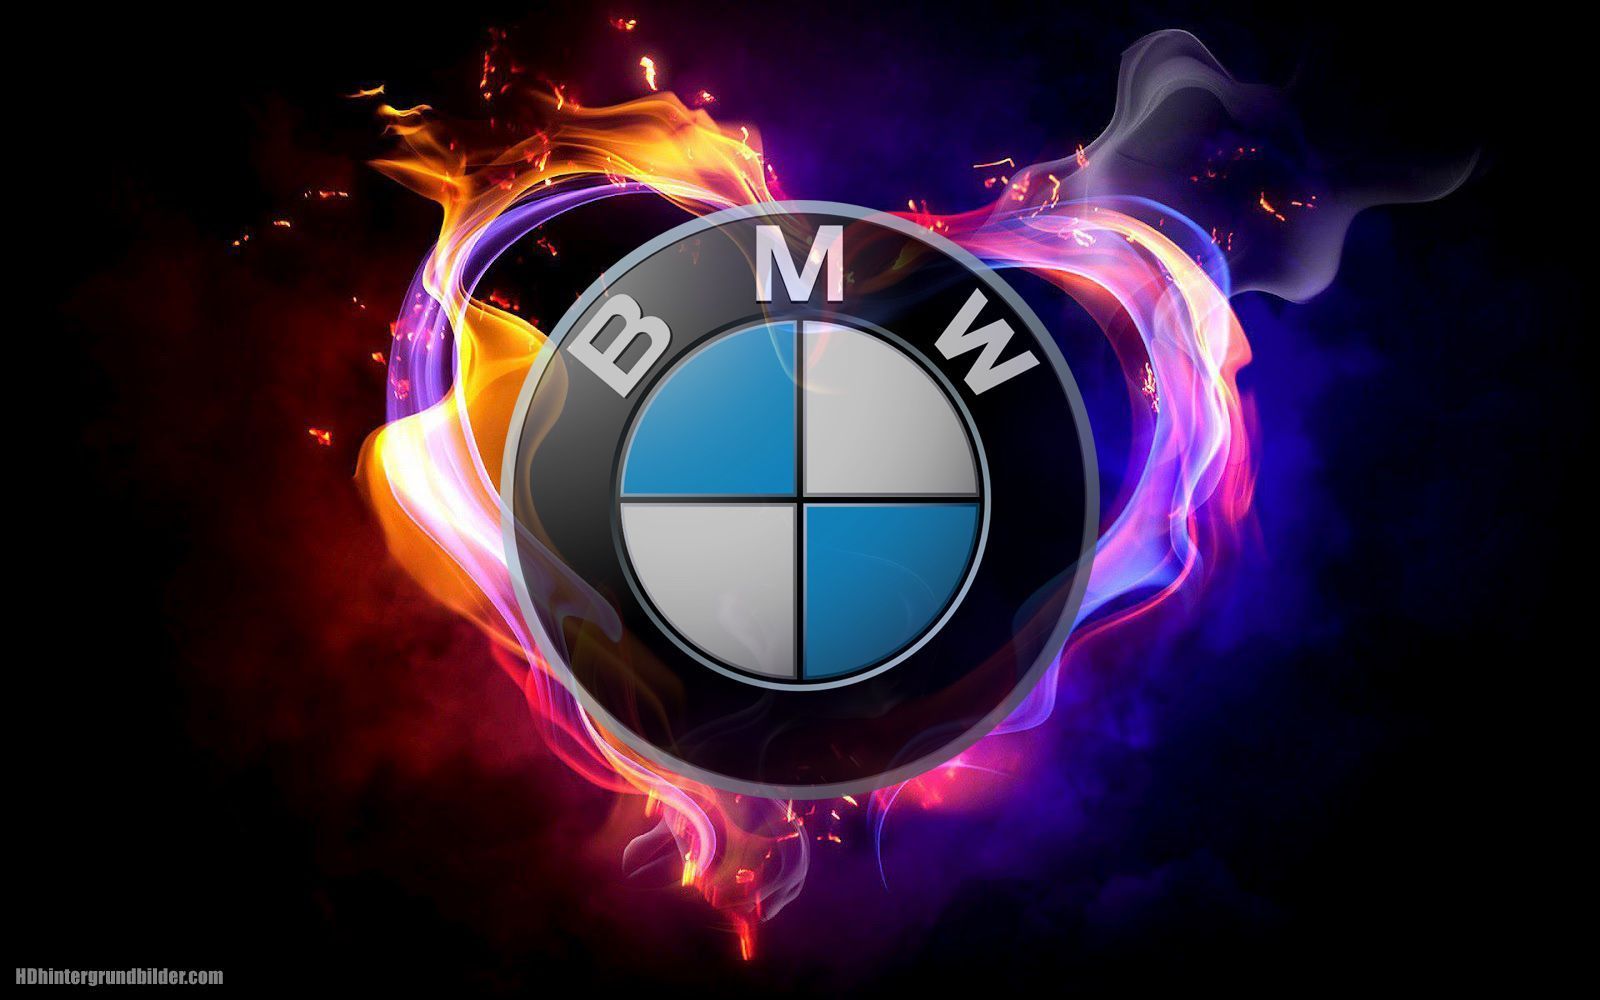  BMW HD Hintergrundbild 1600x1000. Schönen Logo BMW hintergrundbilder, BMW wallpaper und fotos in HD qualität. 아이폰 바탕화면, 멋진 자동차, 자동차